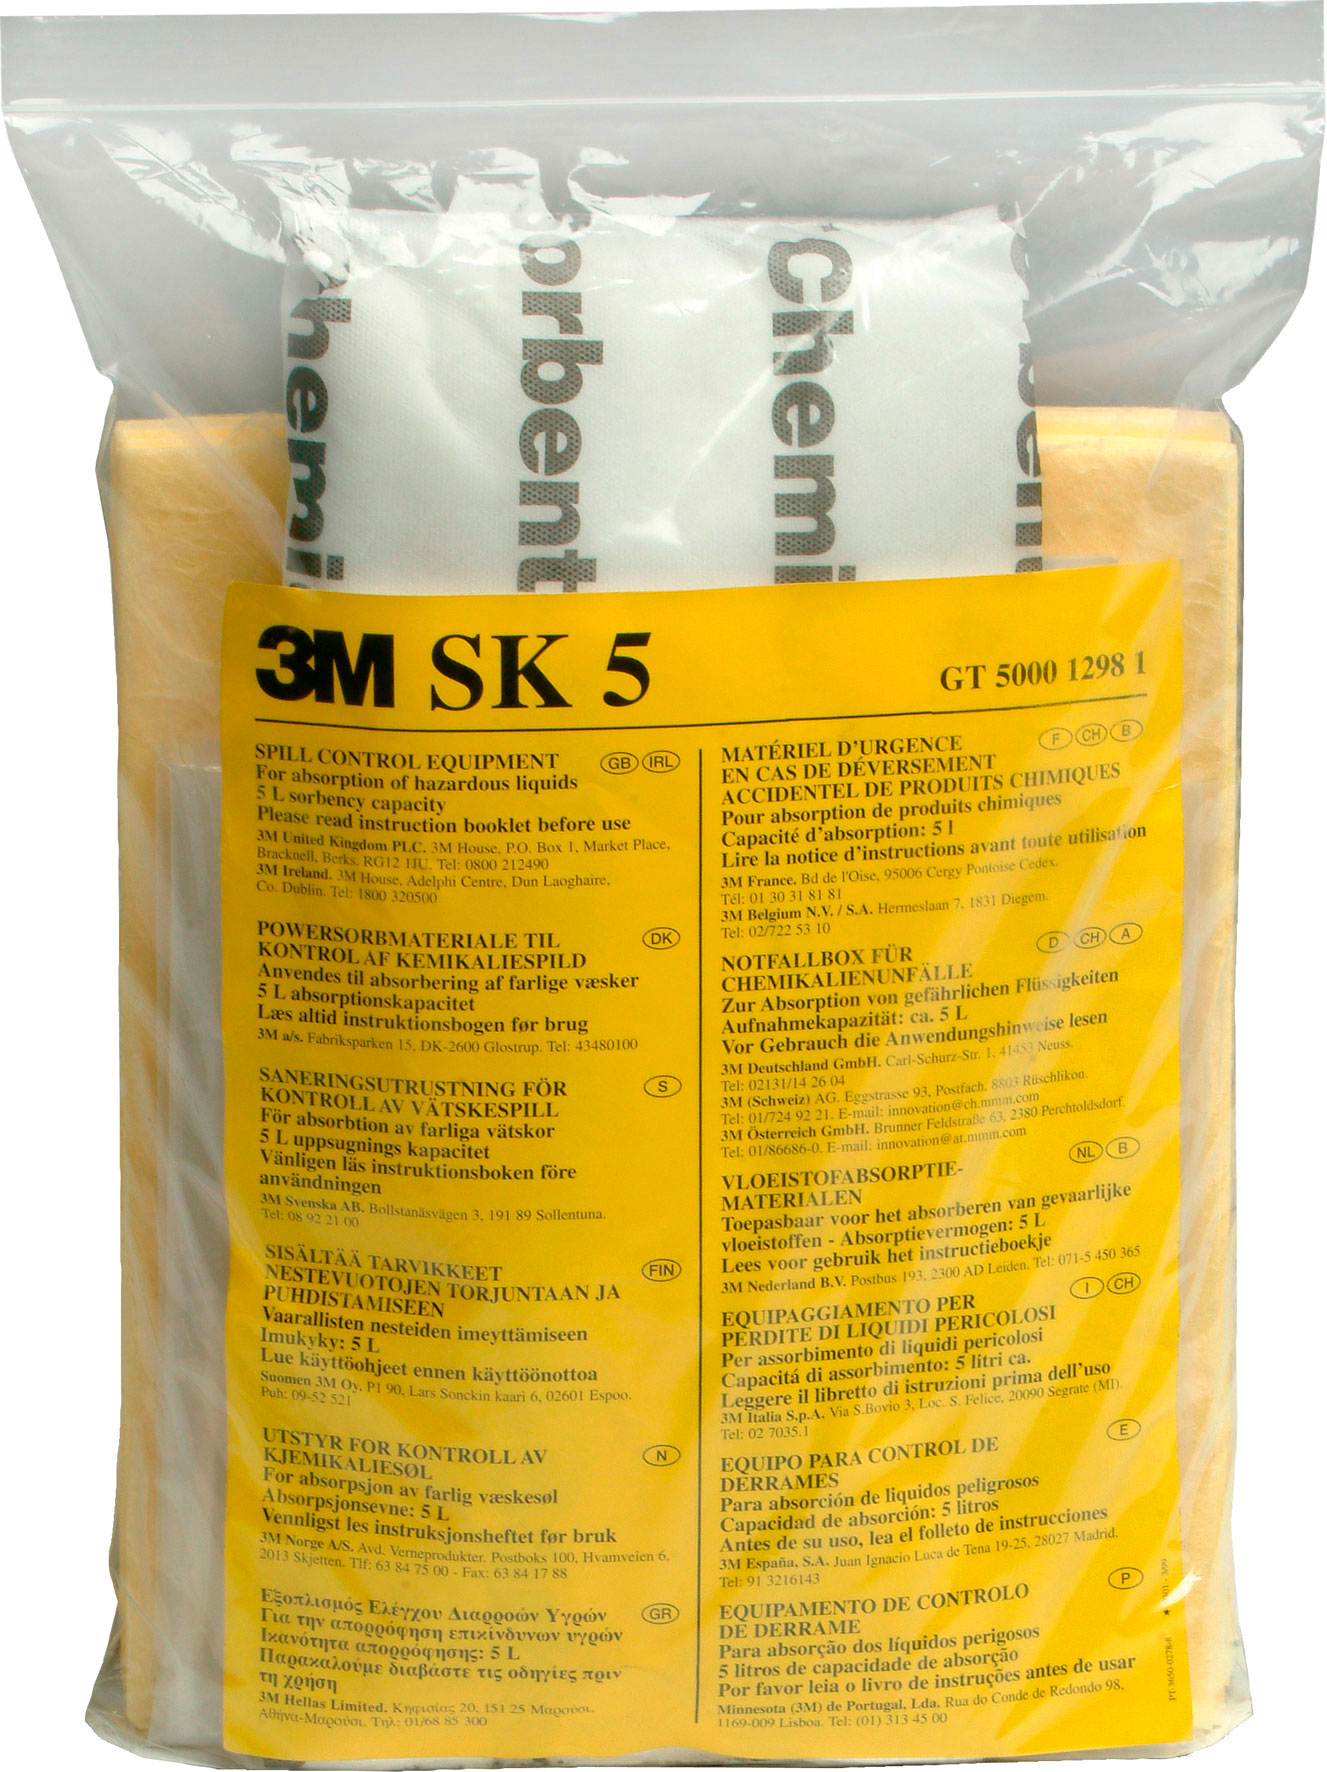 Kits de respuesta a derrames de liquidos peligrosos 3M. Cada Kit contiene una cuidada y selecta variedad de formatos de absorbentes quimicos 3M. Contiene: 10 hojas 28 x 33 cm, 1 almohadilla 18 x 38 cm